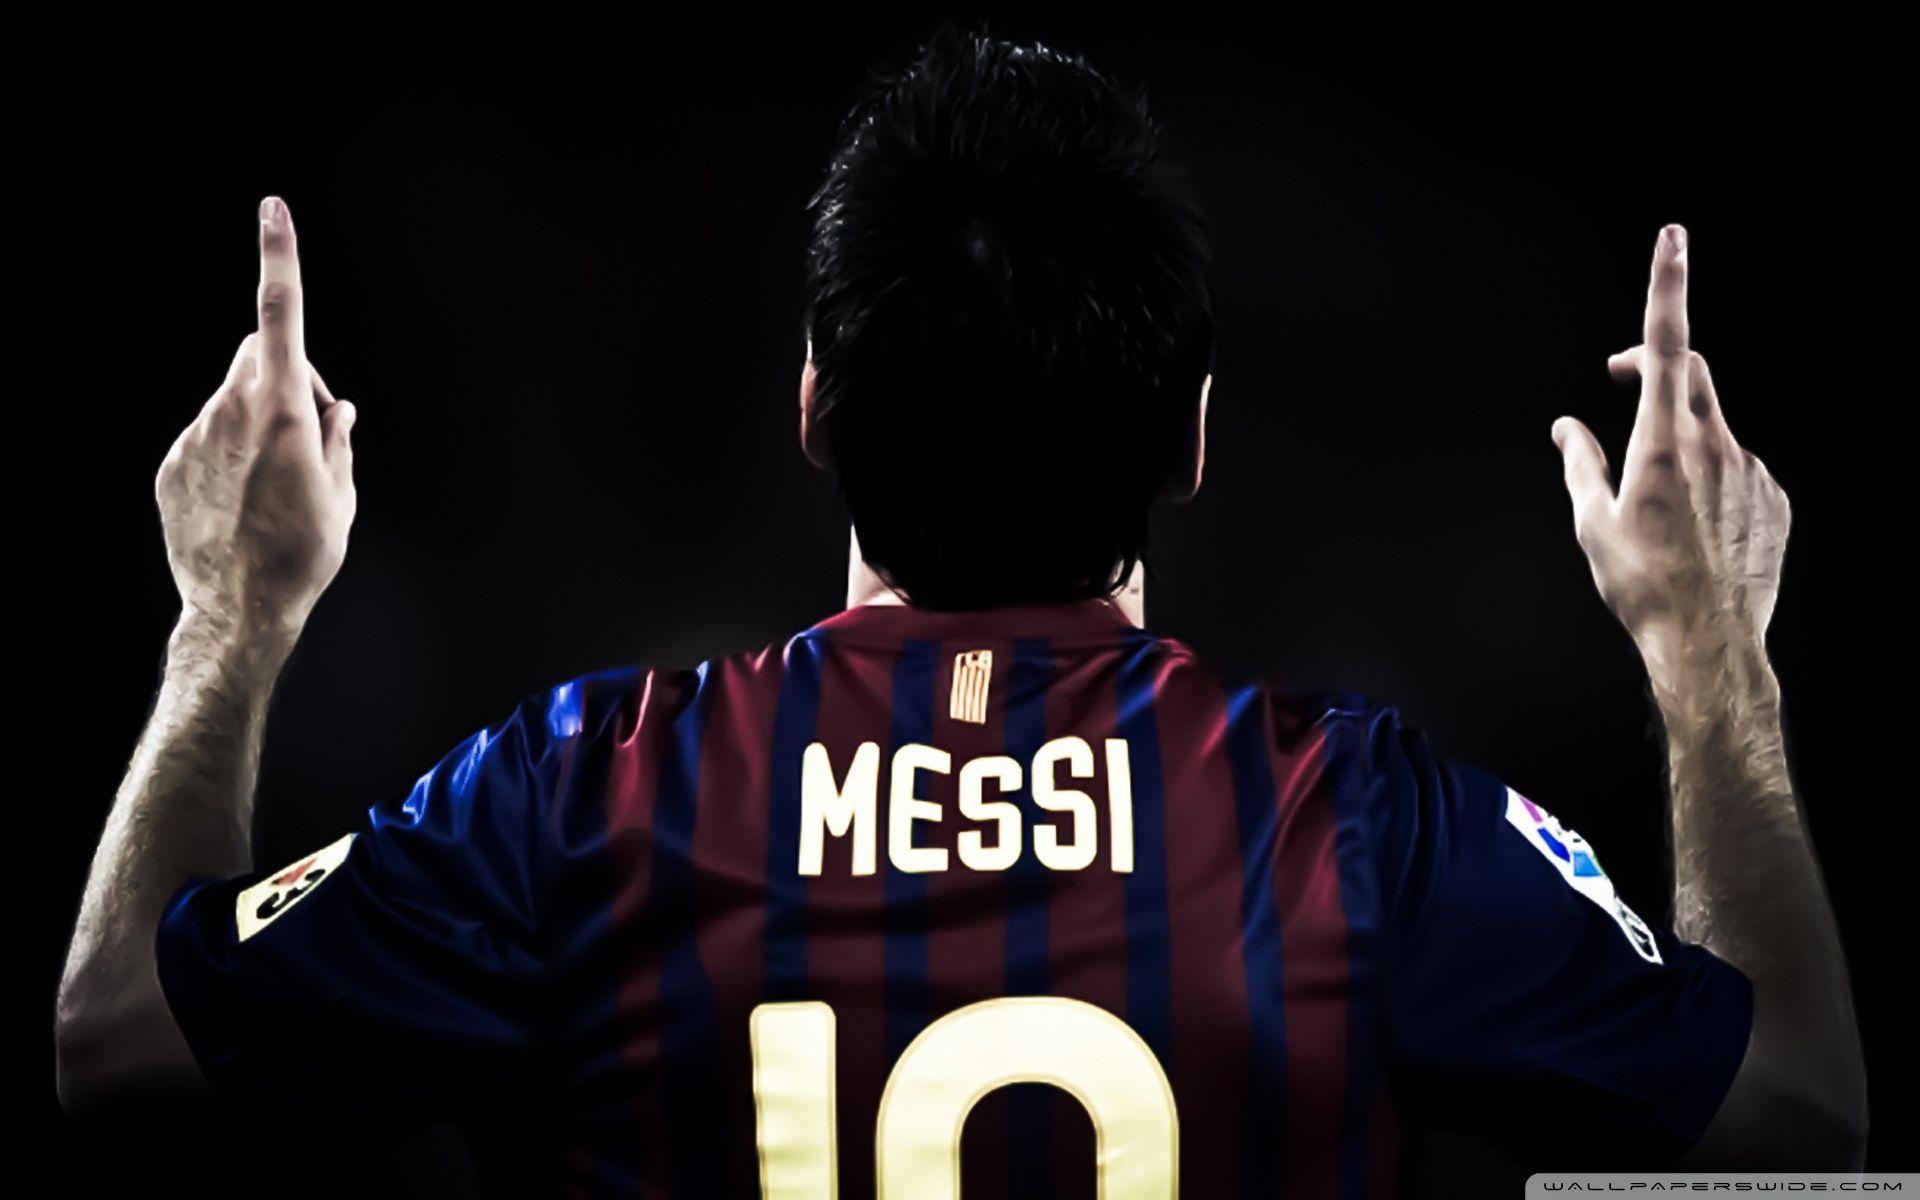 Messi 2011 HD desktop wallpapers : High Definition : Fullscreen